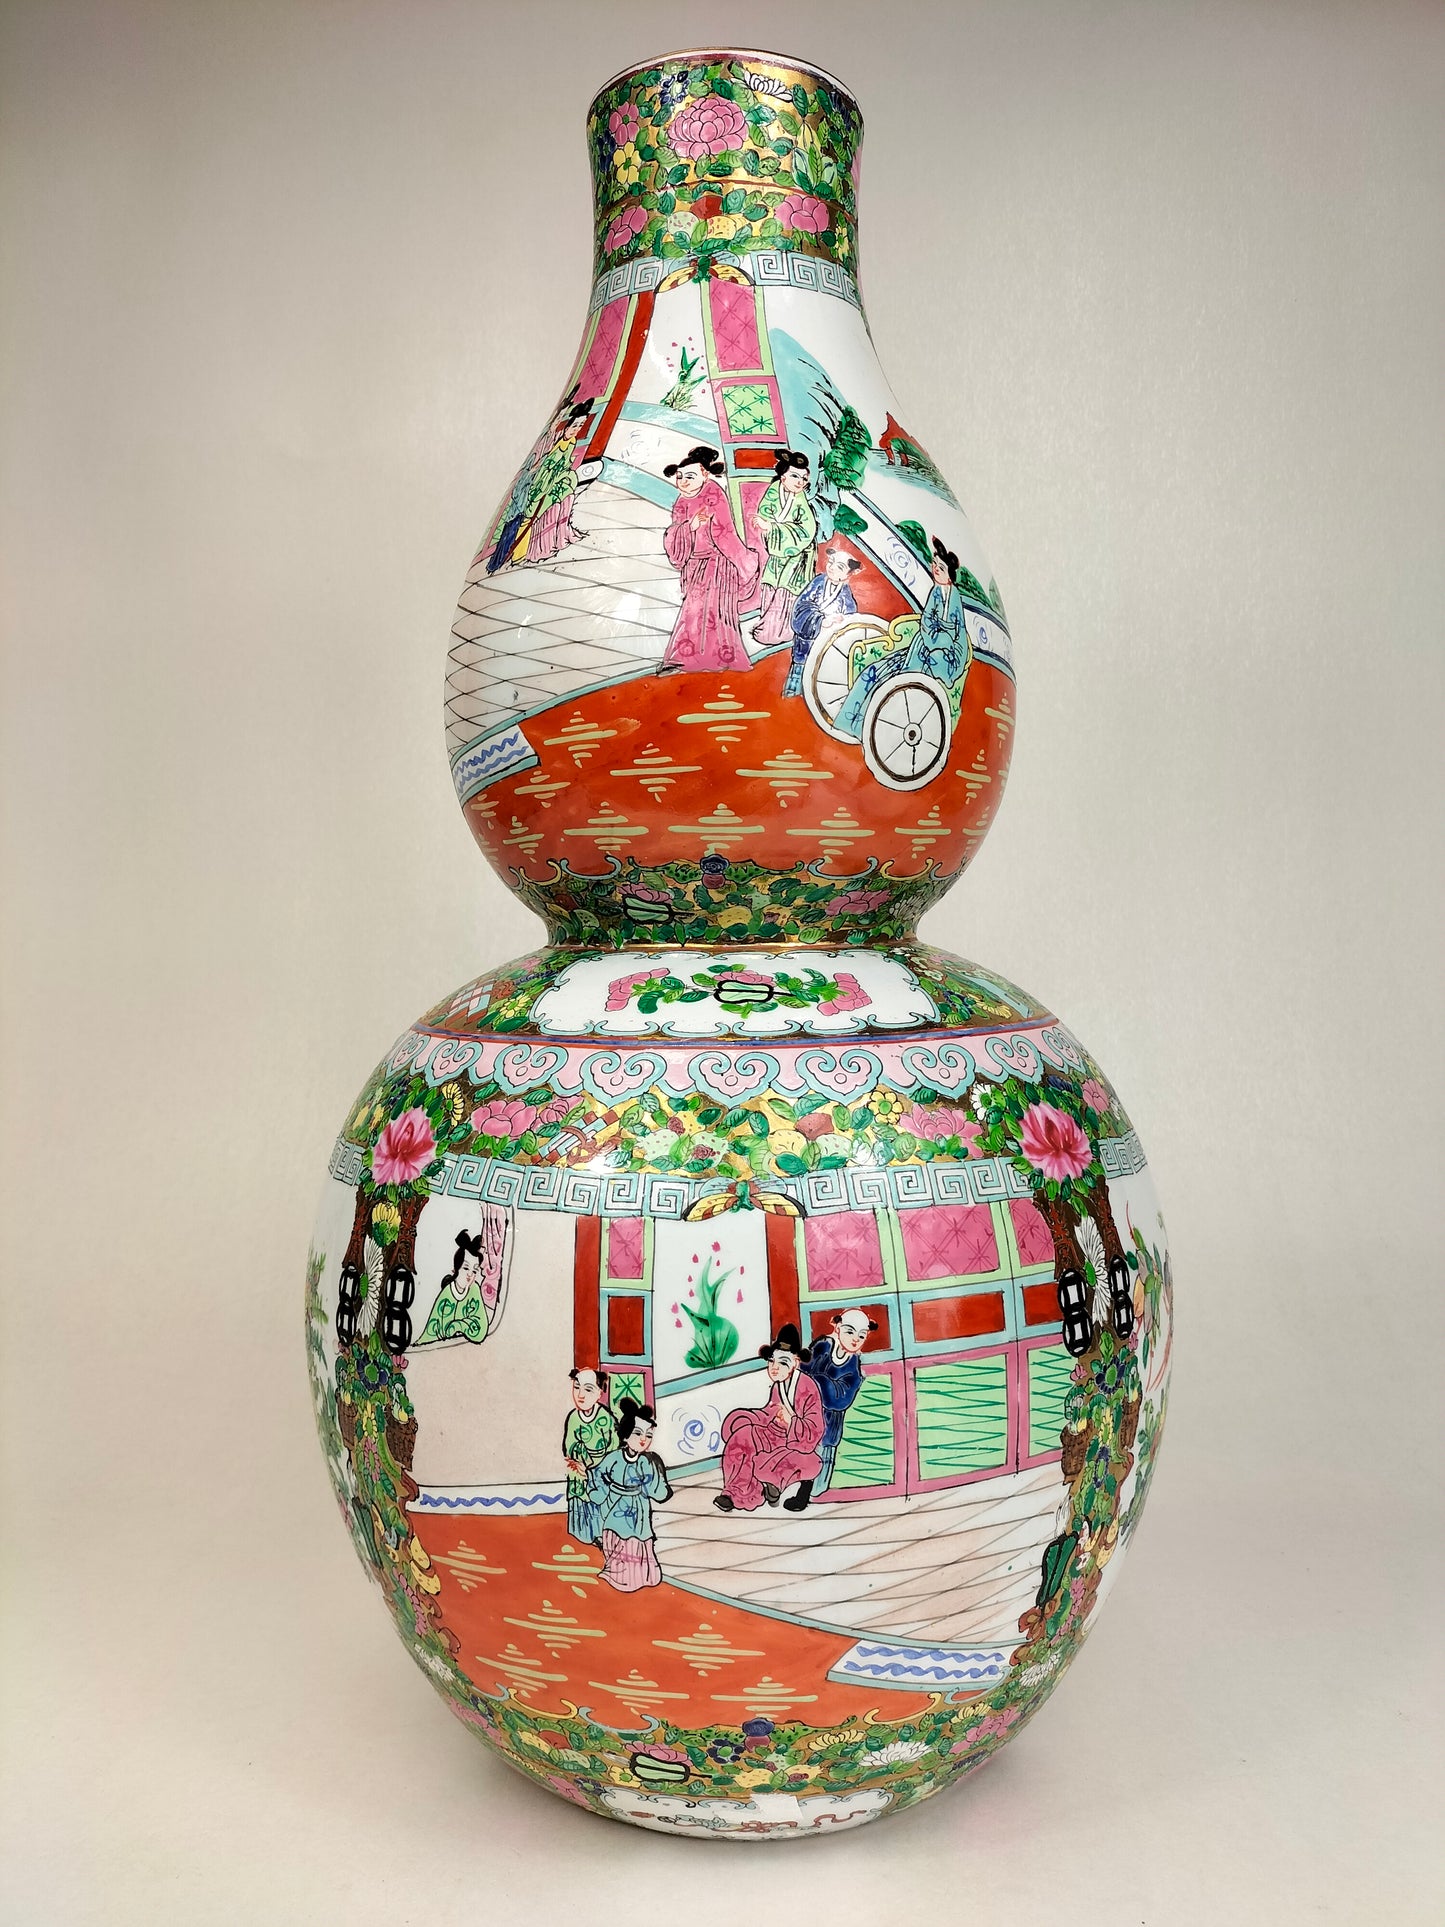 大型 XL 中国广州玫瑰花章双葫芦花瓶 // 20 世纪中期